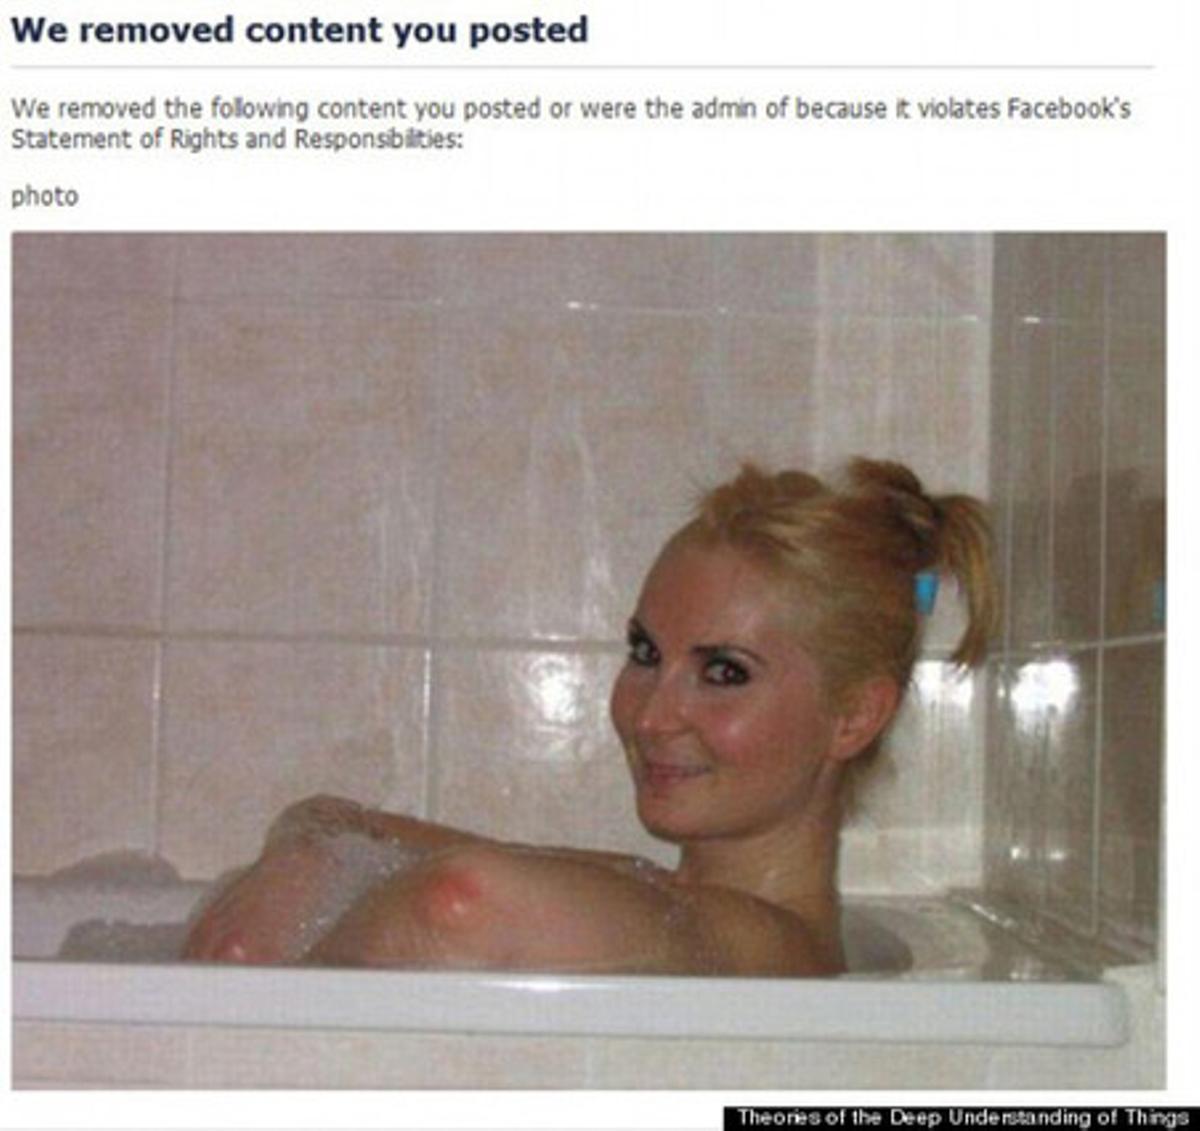 La foto de la chica rubia en la bañera que a Facebook le pareció inadmisible.